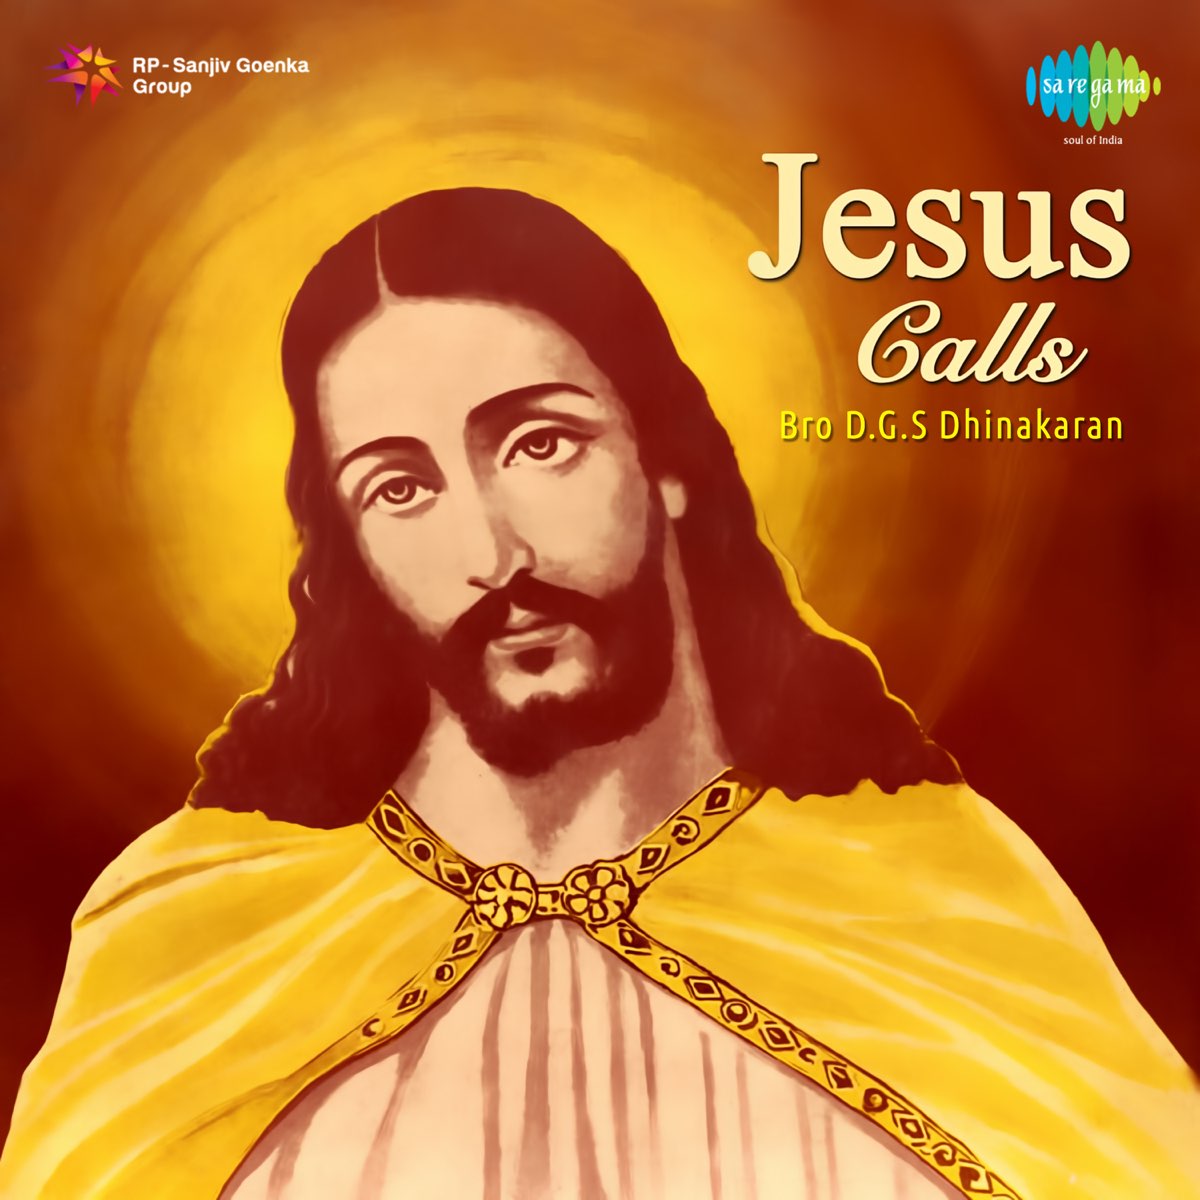 Jesus Calls by Bro.D.G.S.Dhinakaran on Apple Music